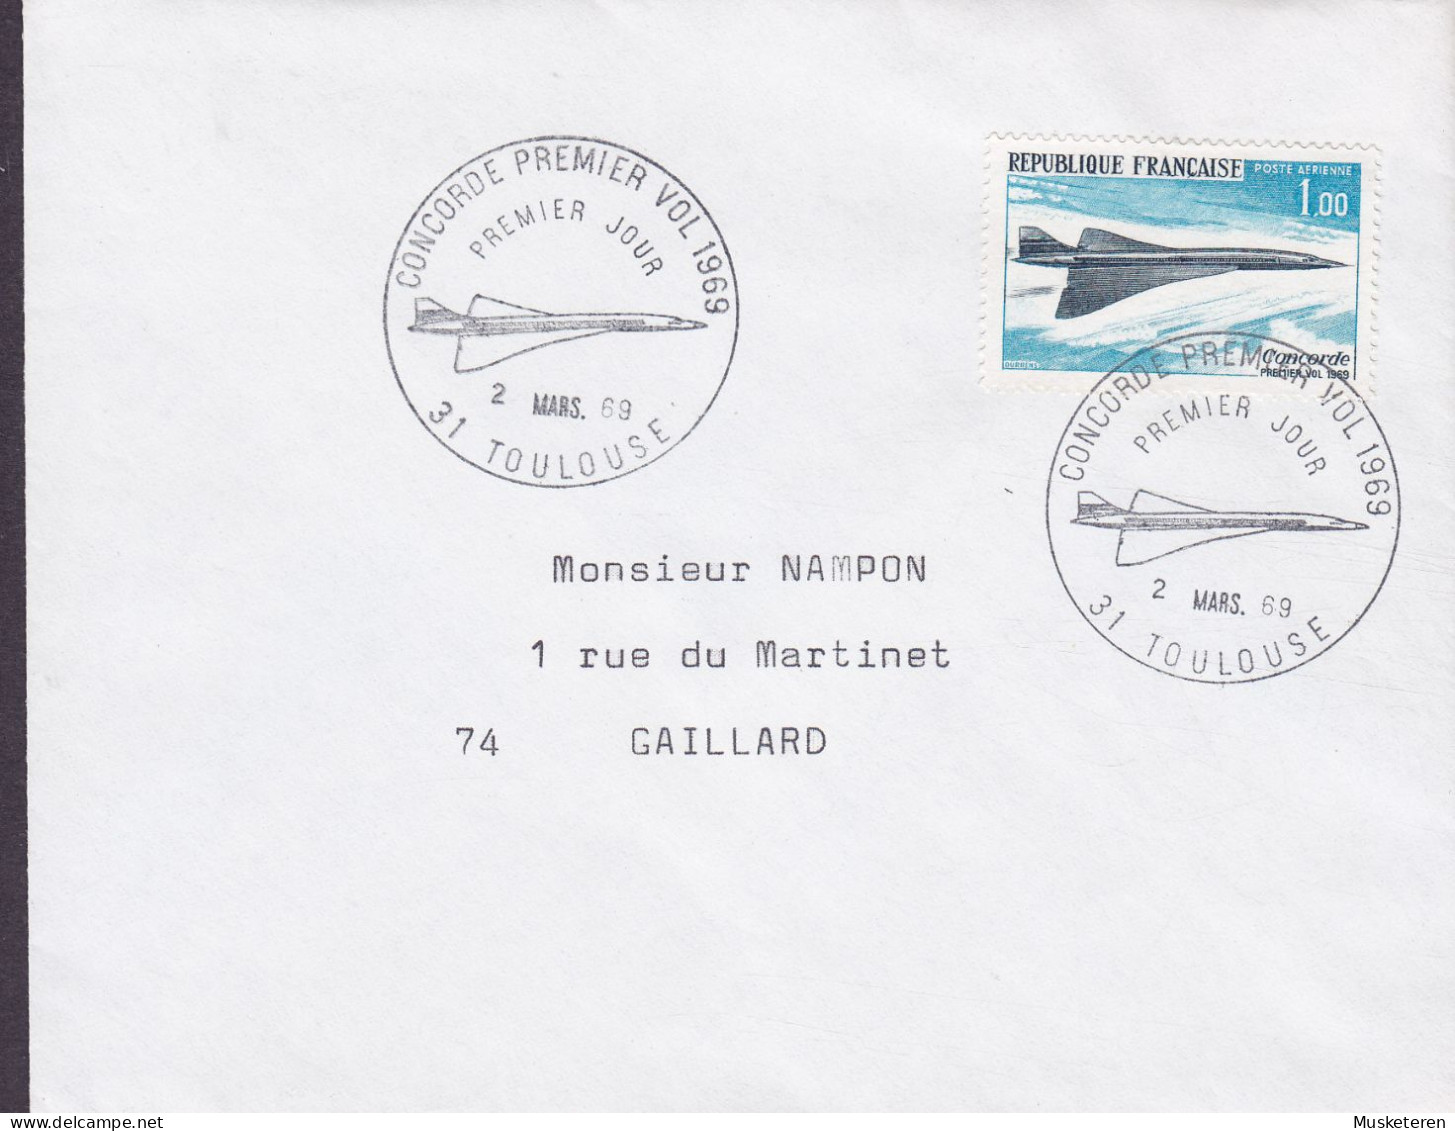 France 'Concorde' Premier Vol TOULOUSE 1969 FDC Cover  Premier Jour Lettre Parallelausgabe Joint Issue W. Great Britain - 1960-1969